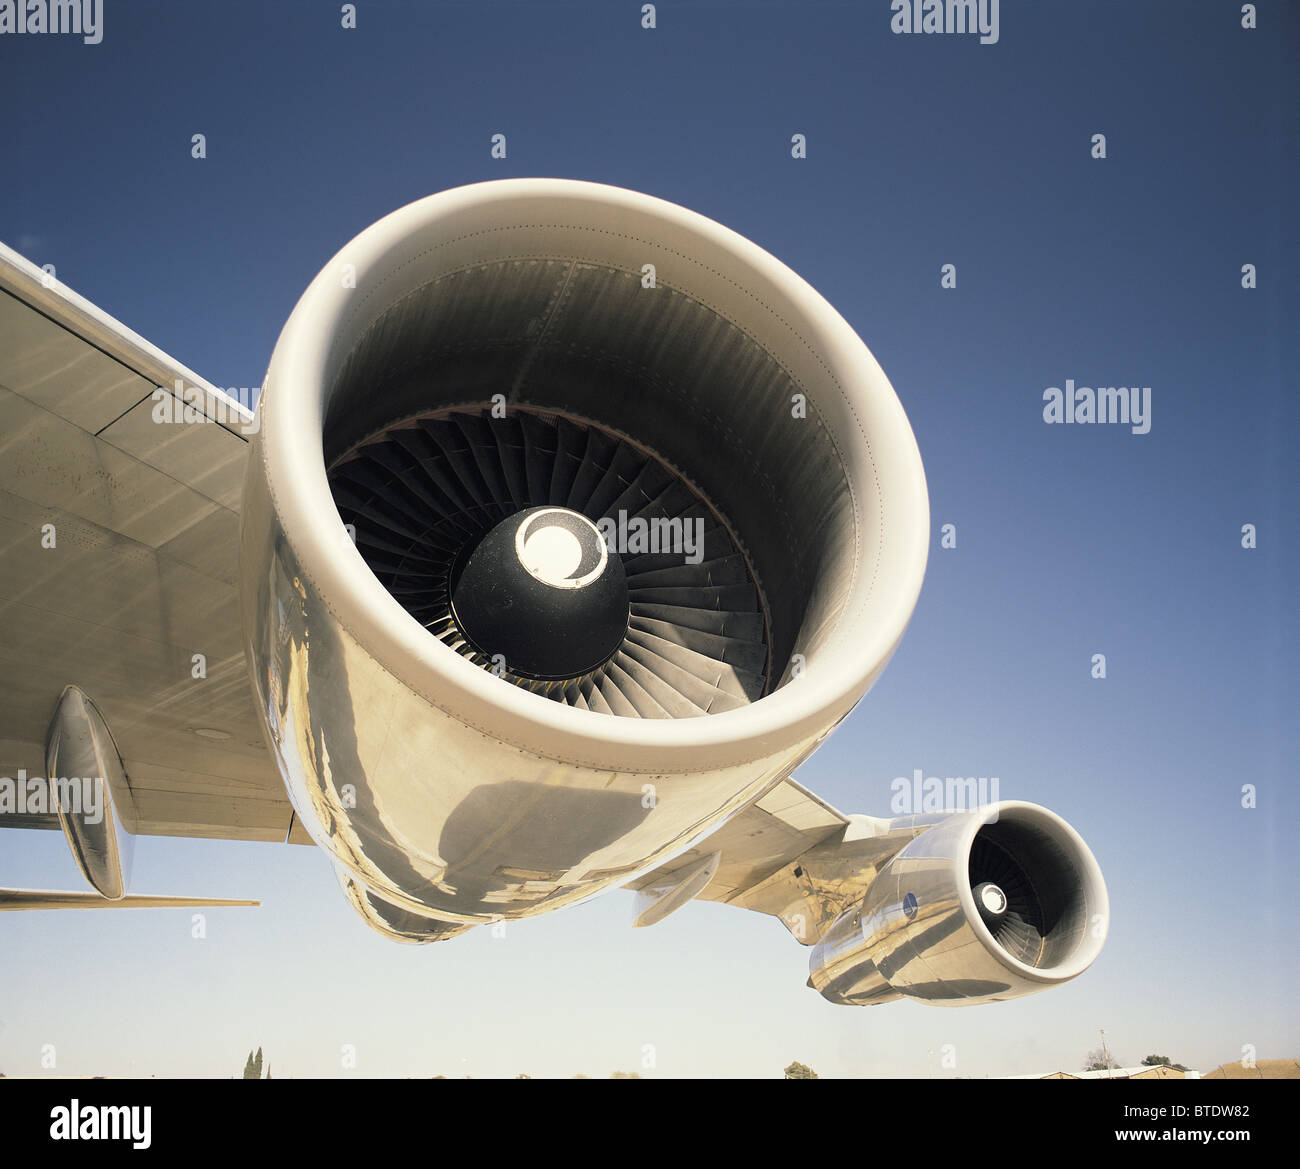 Die leistungsfähige Turbine befindet sich unter den Fittichen eines Passagierflugzeuges Stockfoto